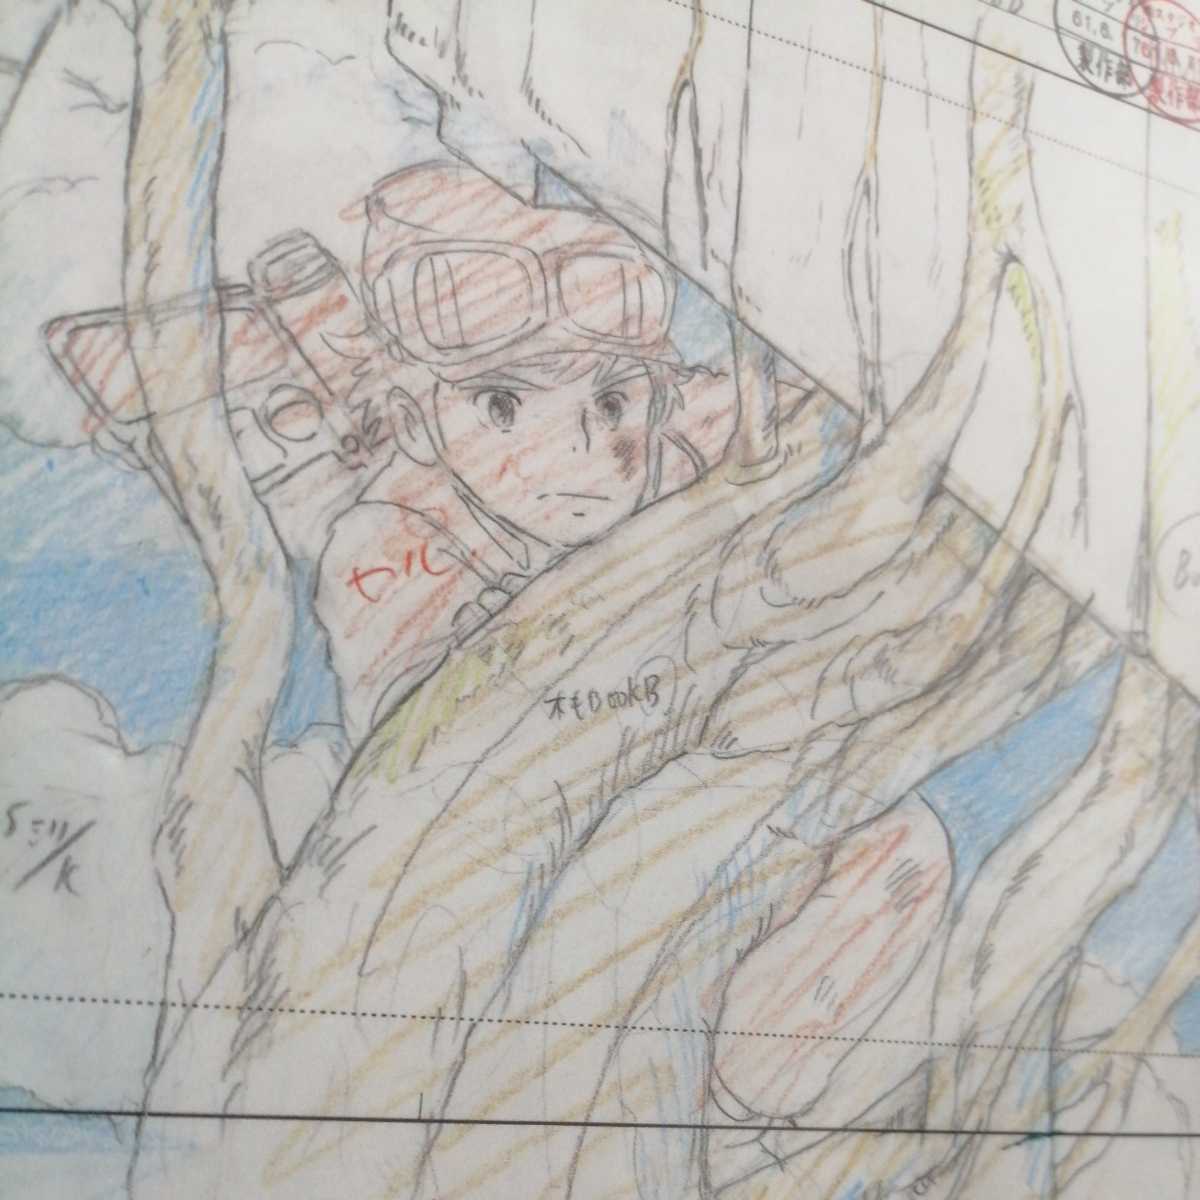  Studio Ghibli небо пустой. замок Laputa расположение порез . осмотр ) Ghibli открытка постер исходная картина цифровая картинка расположение выставка Miyazaki .e